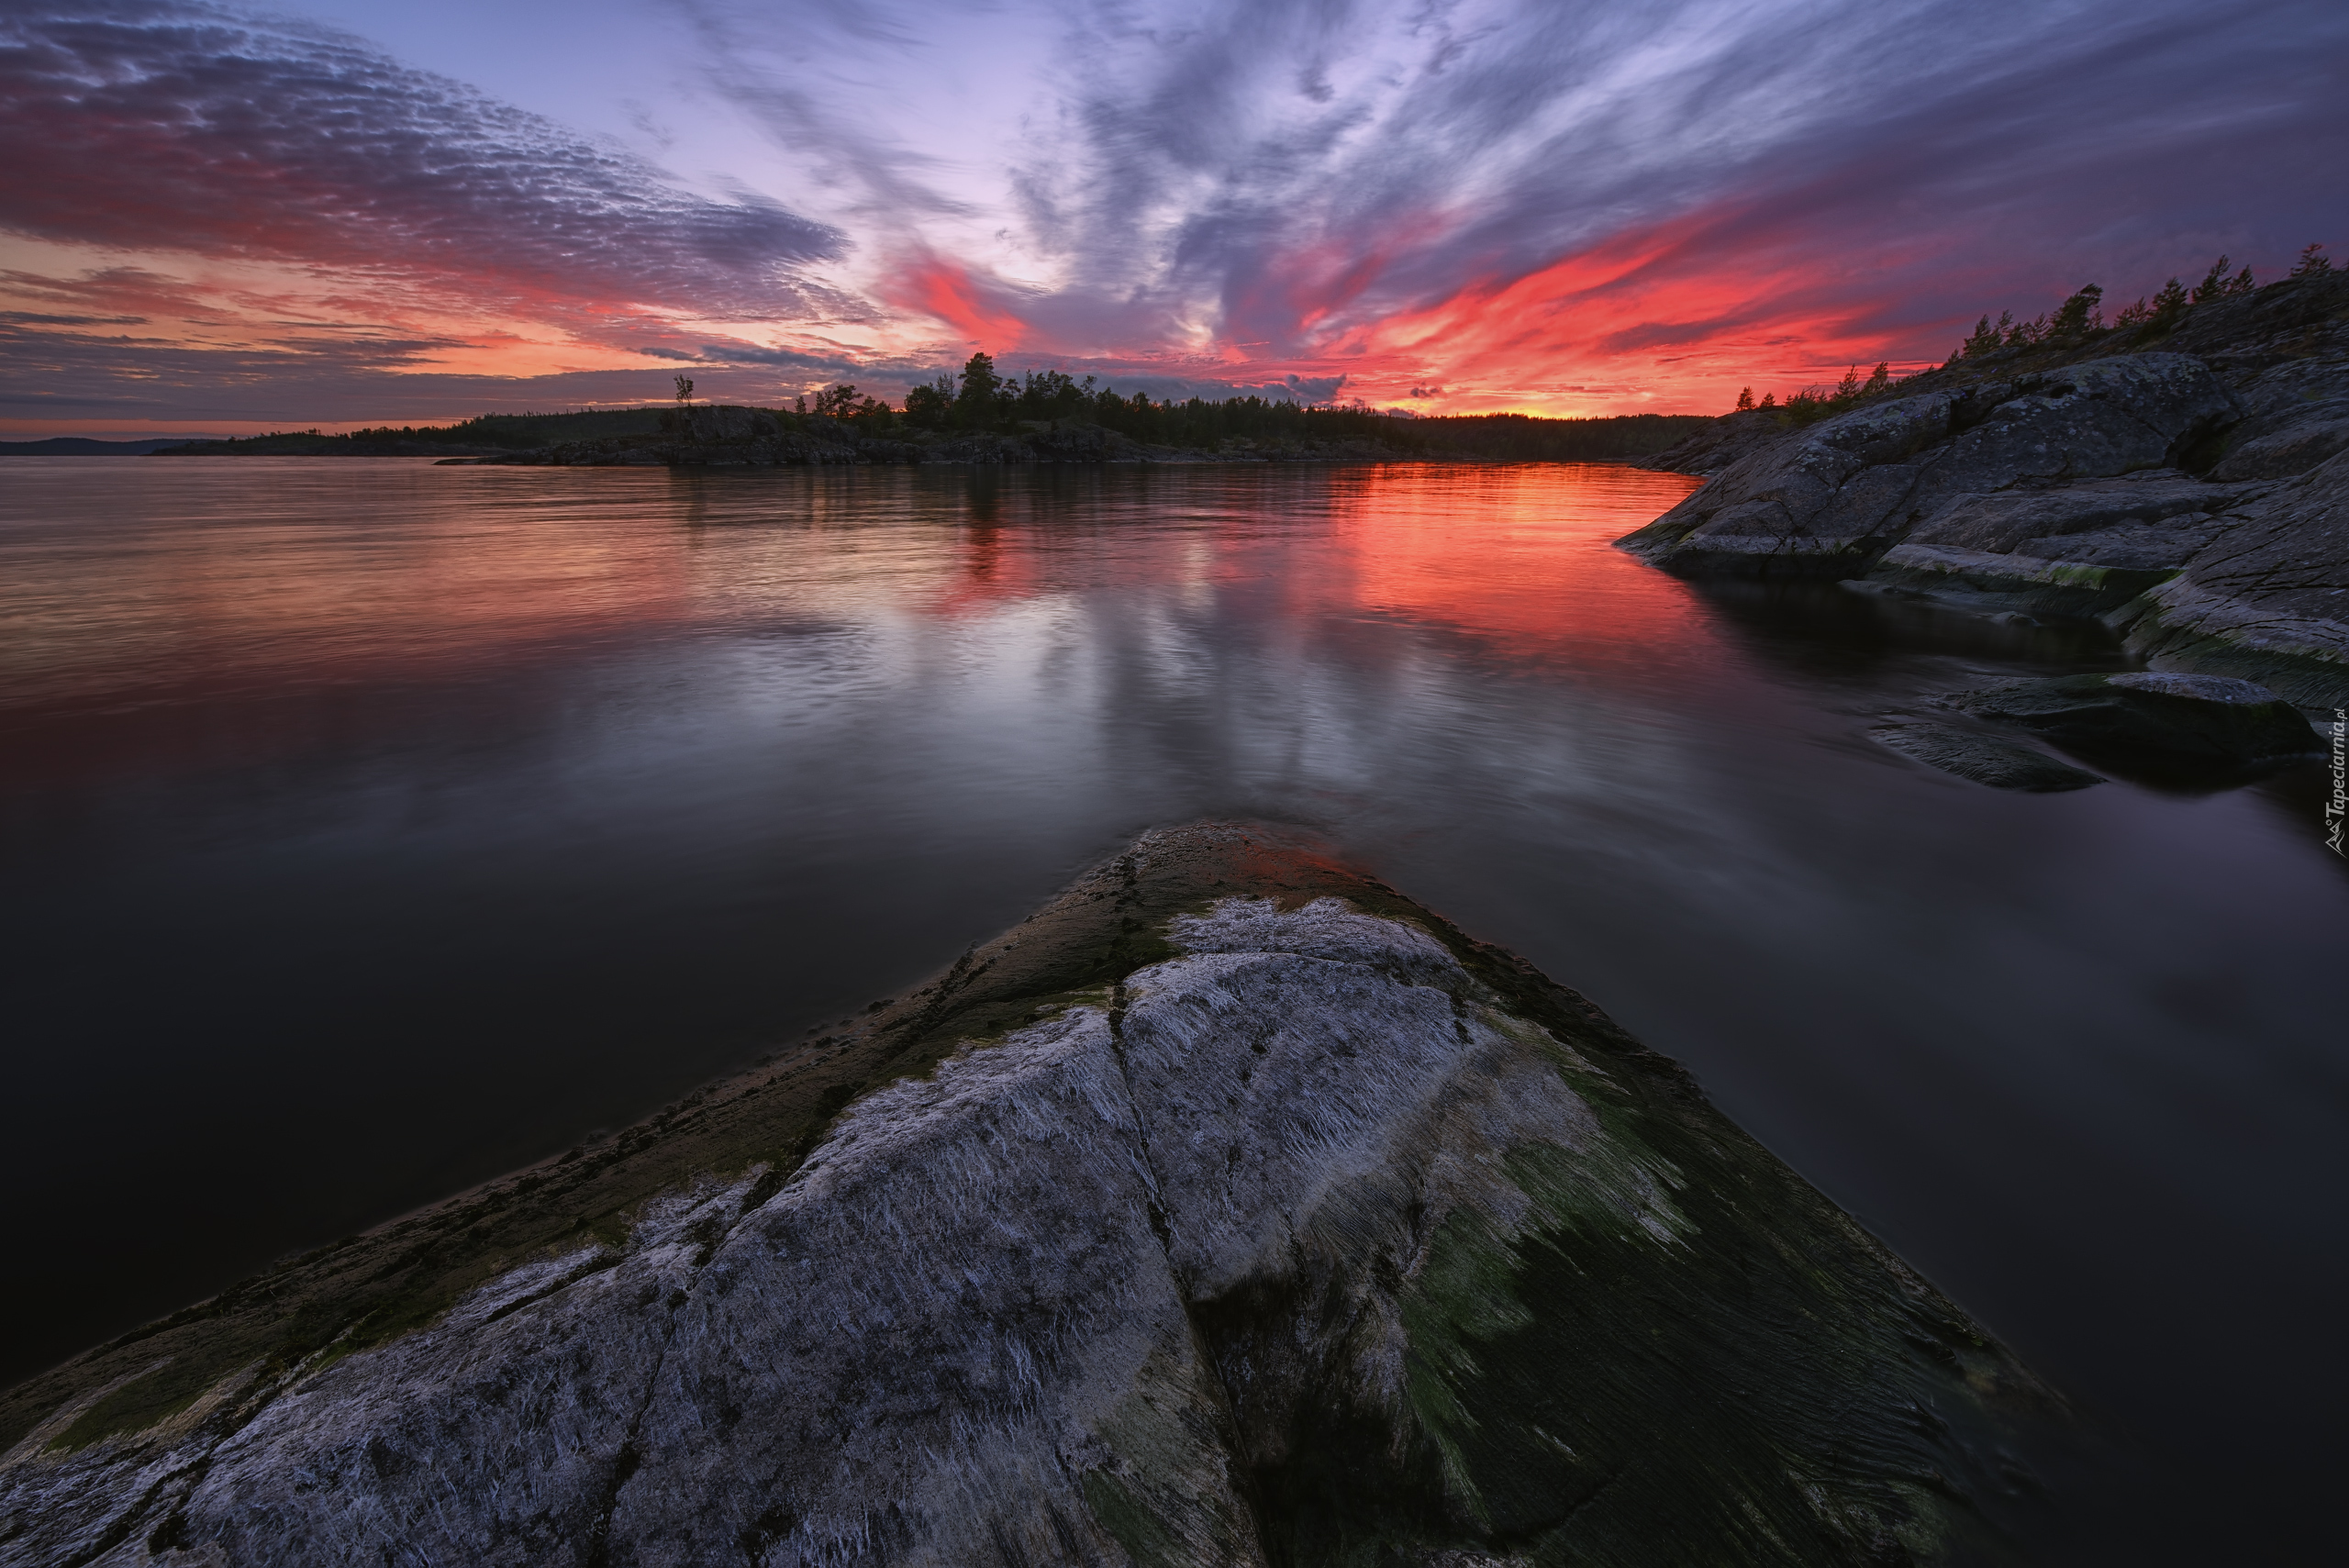  Jezioro Ładoga, Skały, Drzewa, Chmury, Zachód słońca, Karelia, Rosja